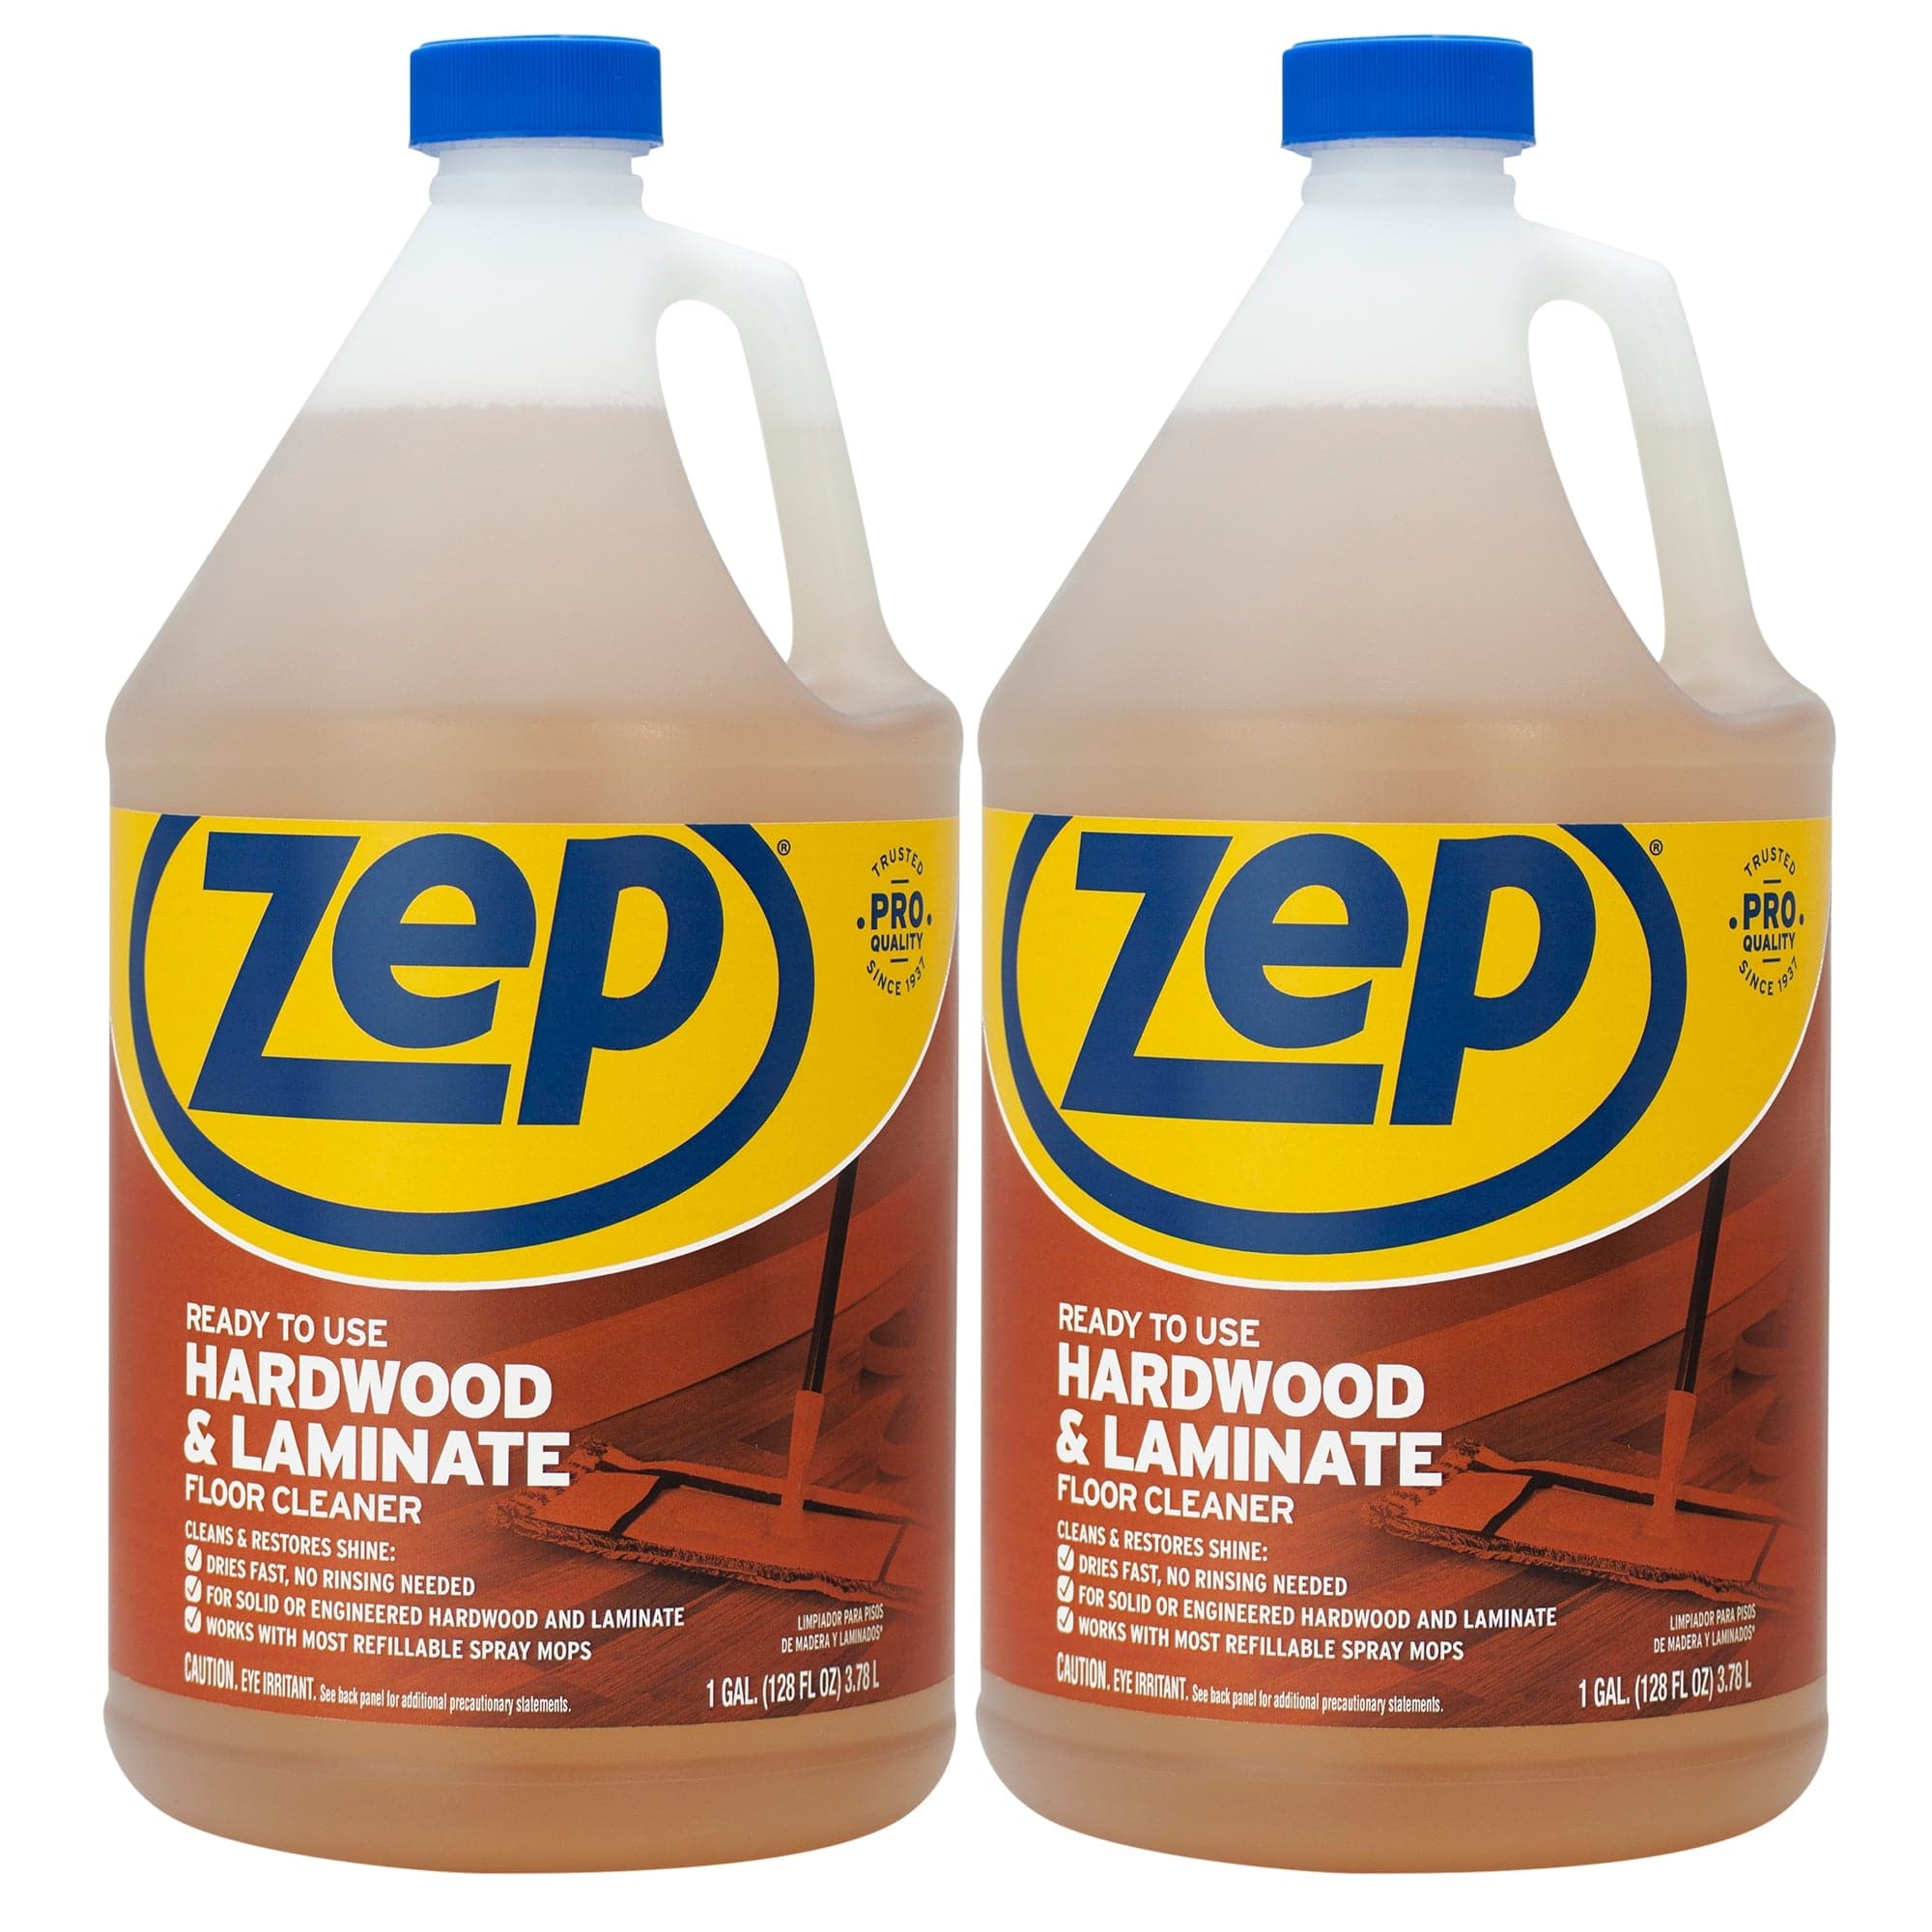 ZEP 1 Gallon Hardwood and Laminate Floor Cleaner ZUHLF128 - The